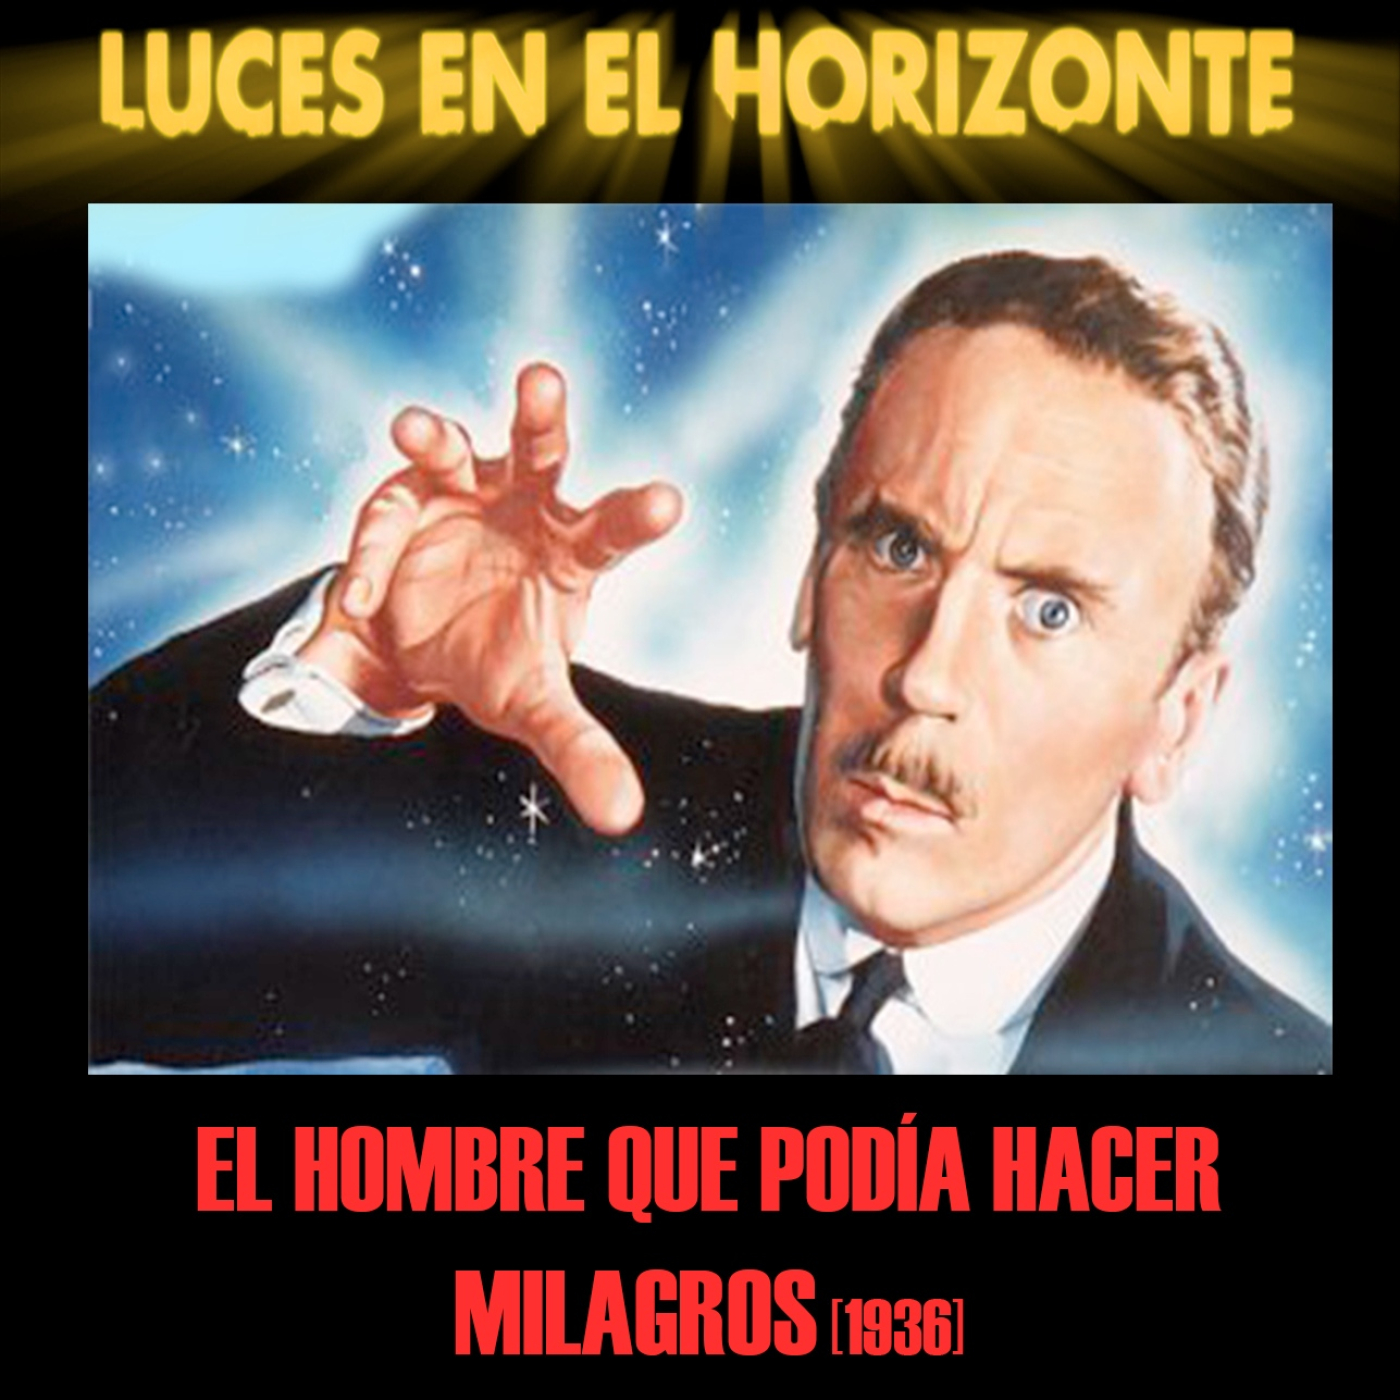 El hombre que podía hacer milagros (1936) - Luces en el Horizonte